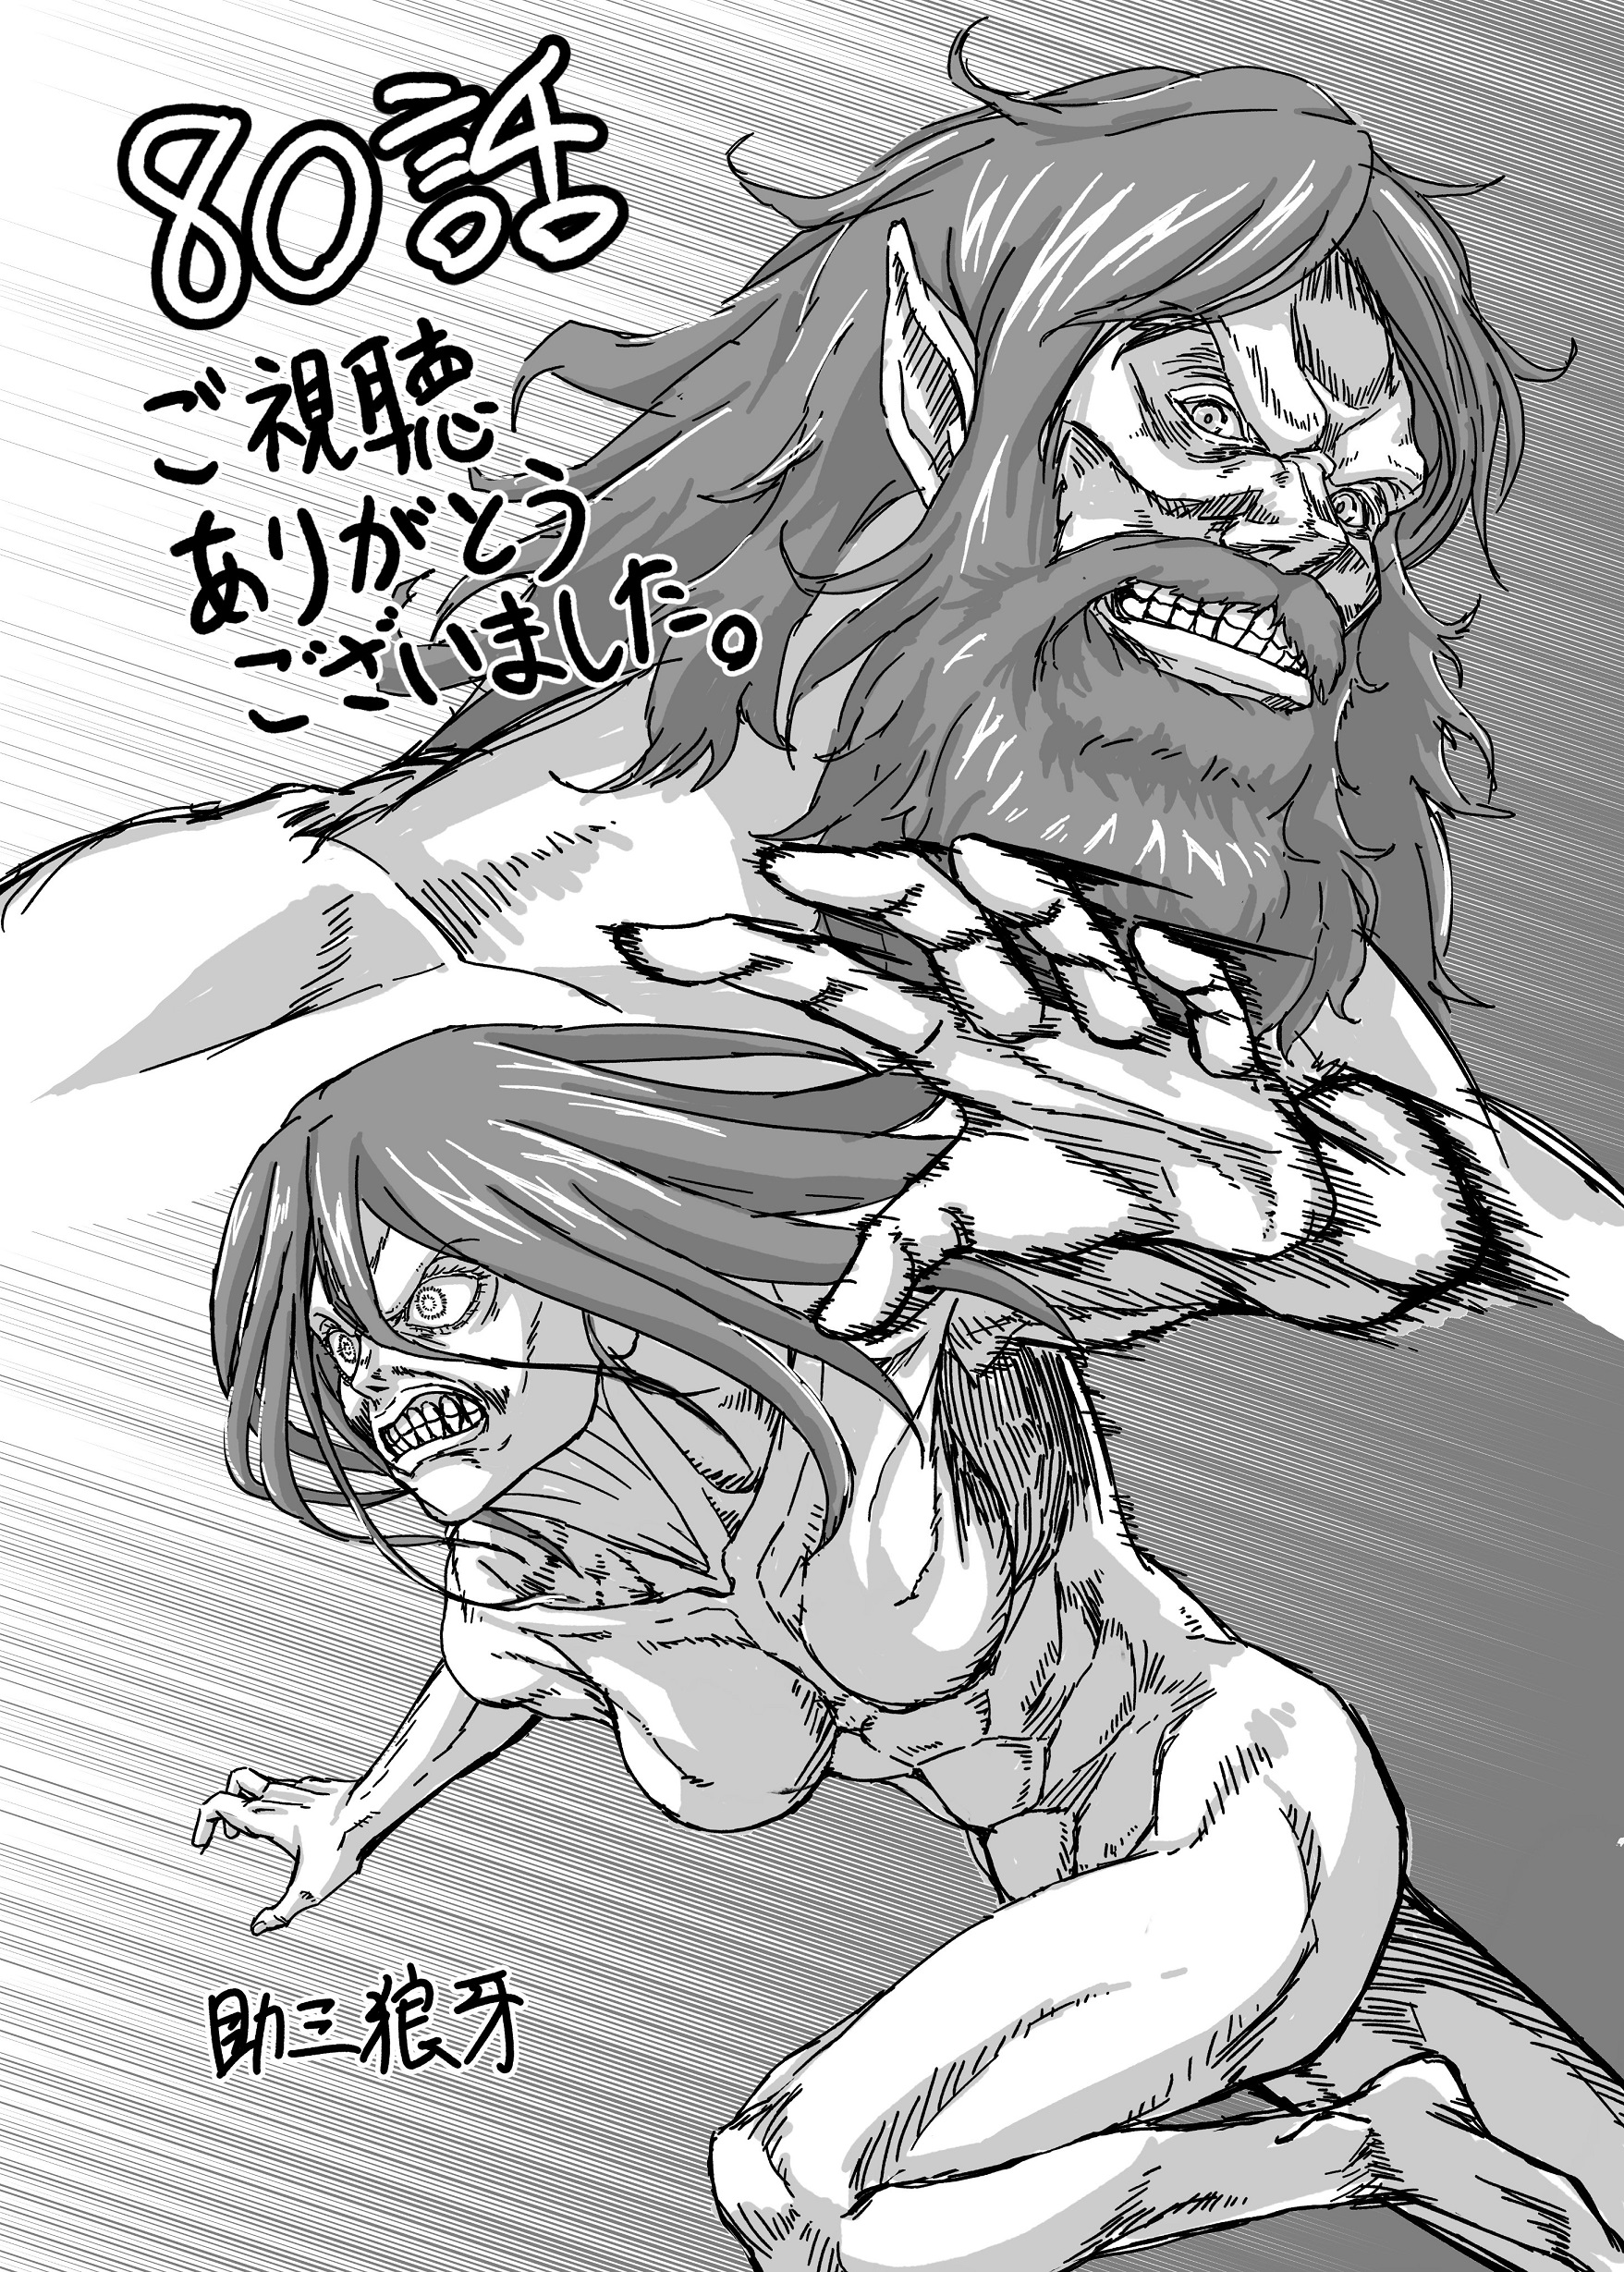 Attack on Titan celebra o lançamento do episódio 80 com ilustração de Grisha e Frieda